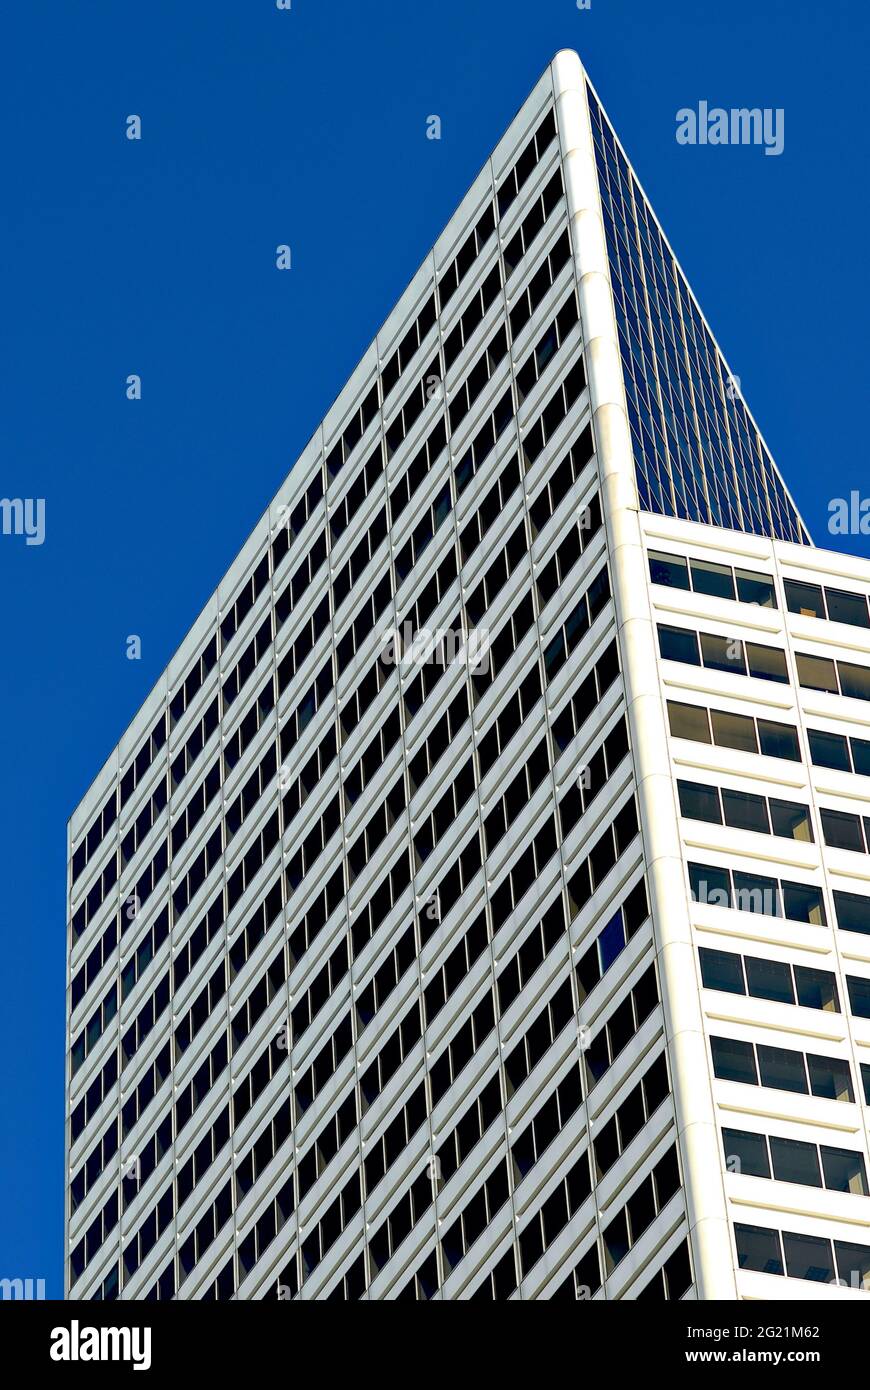 Un grattacielo nel centro di Chicago, Illinois, Stati Uniti, è bagnato dalla luce del sole contro un cielo blu chiaro in una fredda giornata invernale. Foto Stock